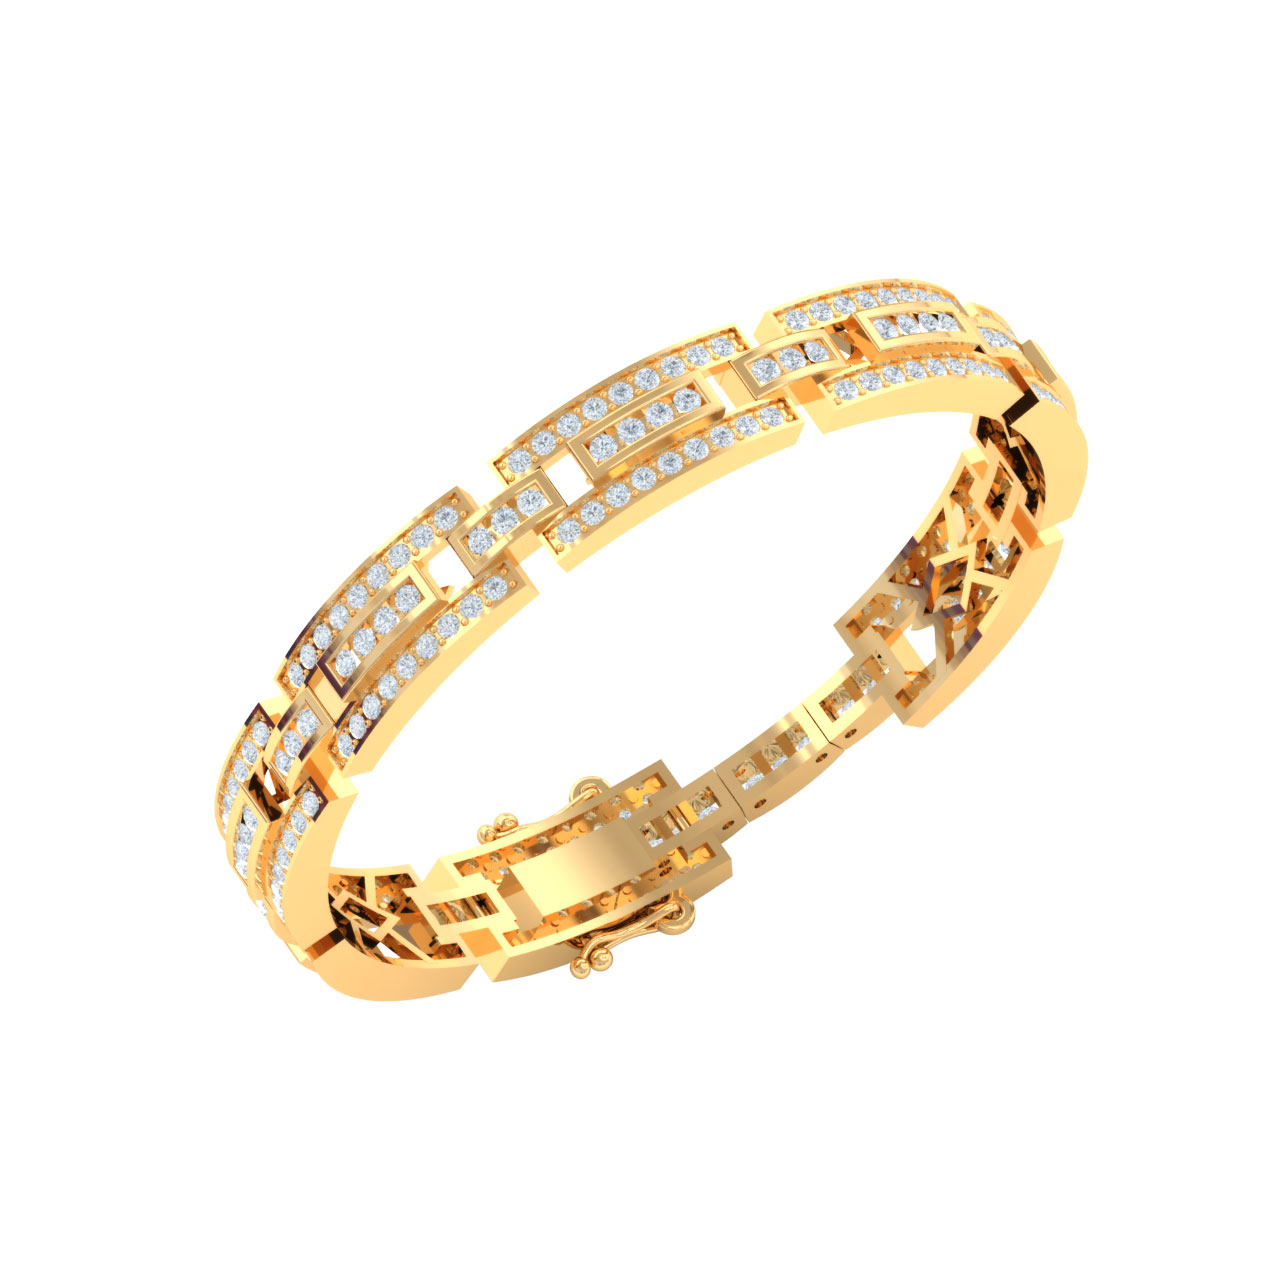 Kanishk Diamond Bracelet In Gold For Men